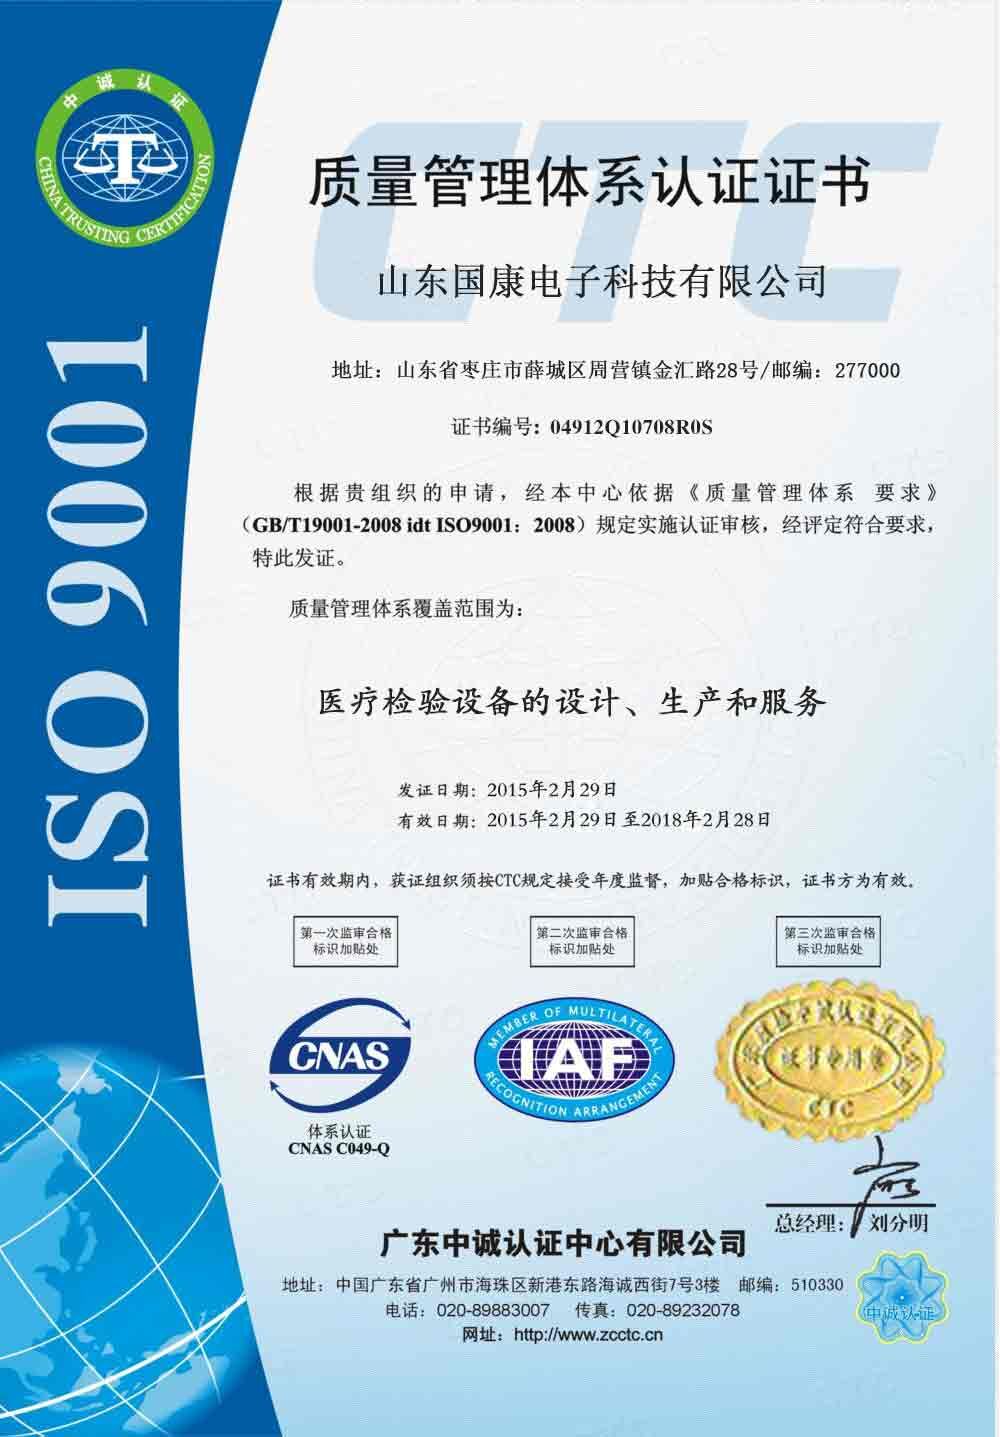 听觉统合训练仪ISO9001认证证书—山东国康